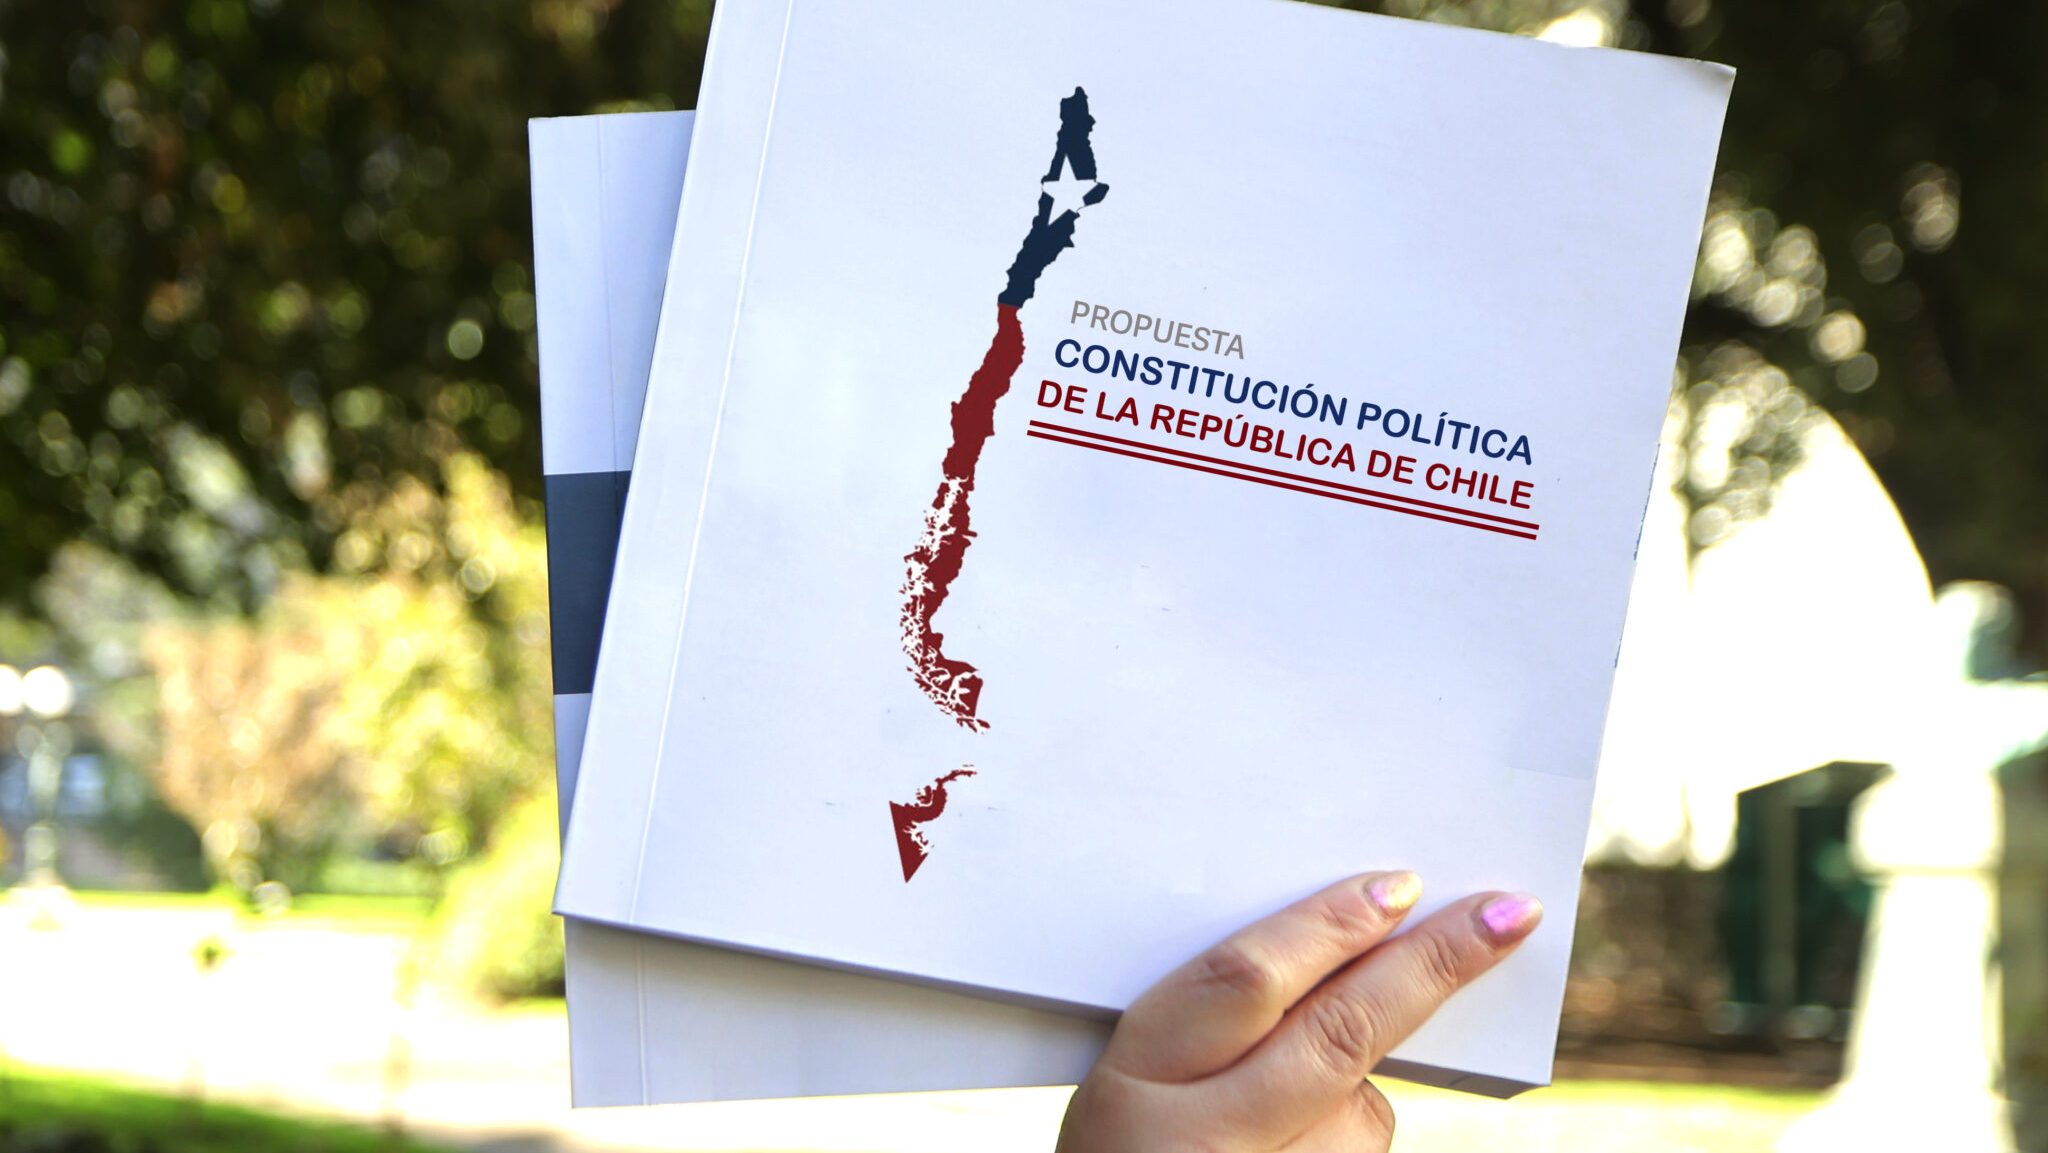 Cuatro miradas sobre la propuesta constitucional que fractura Chile